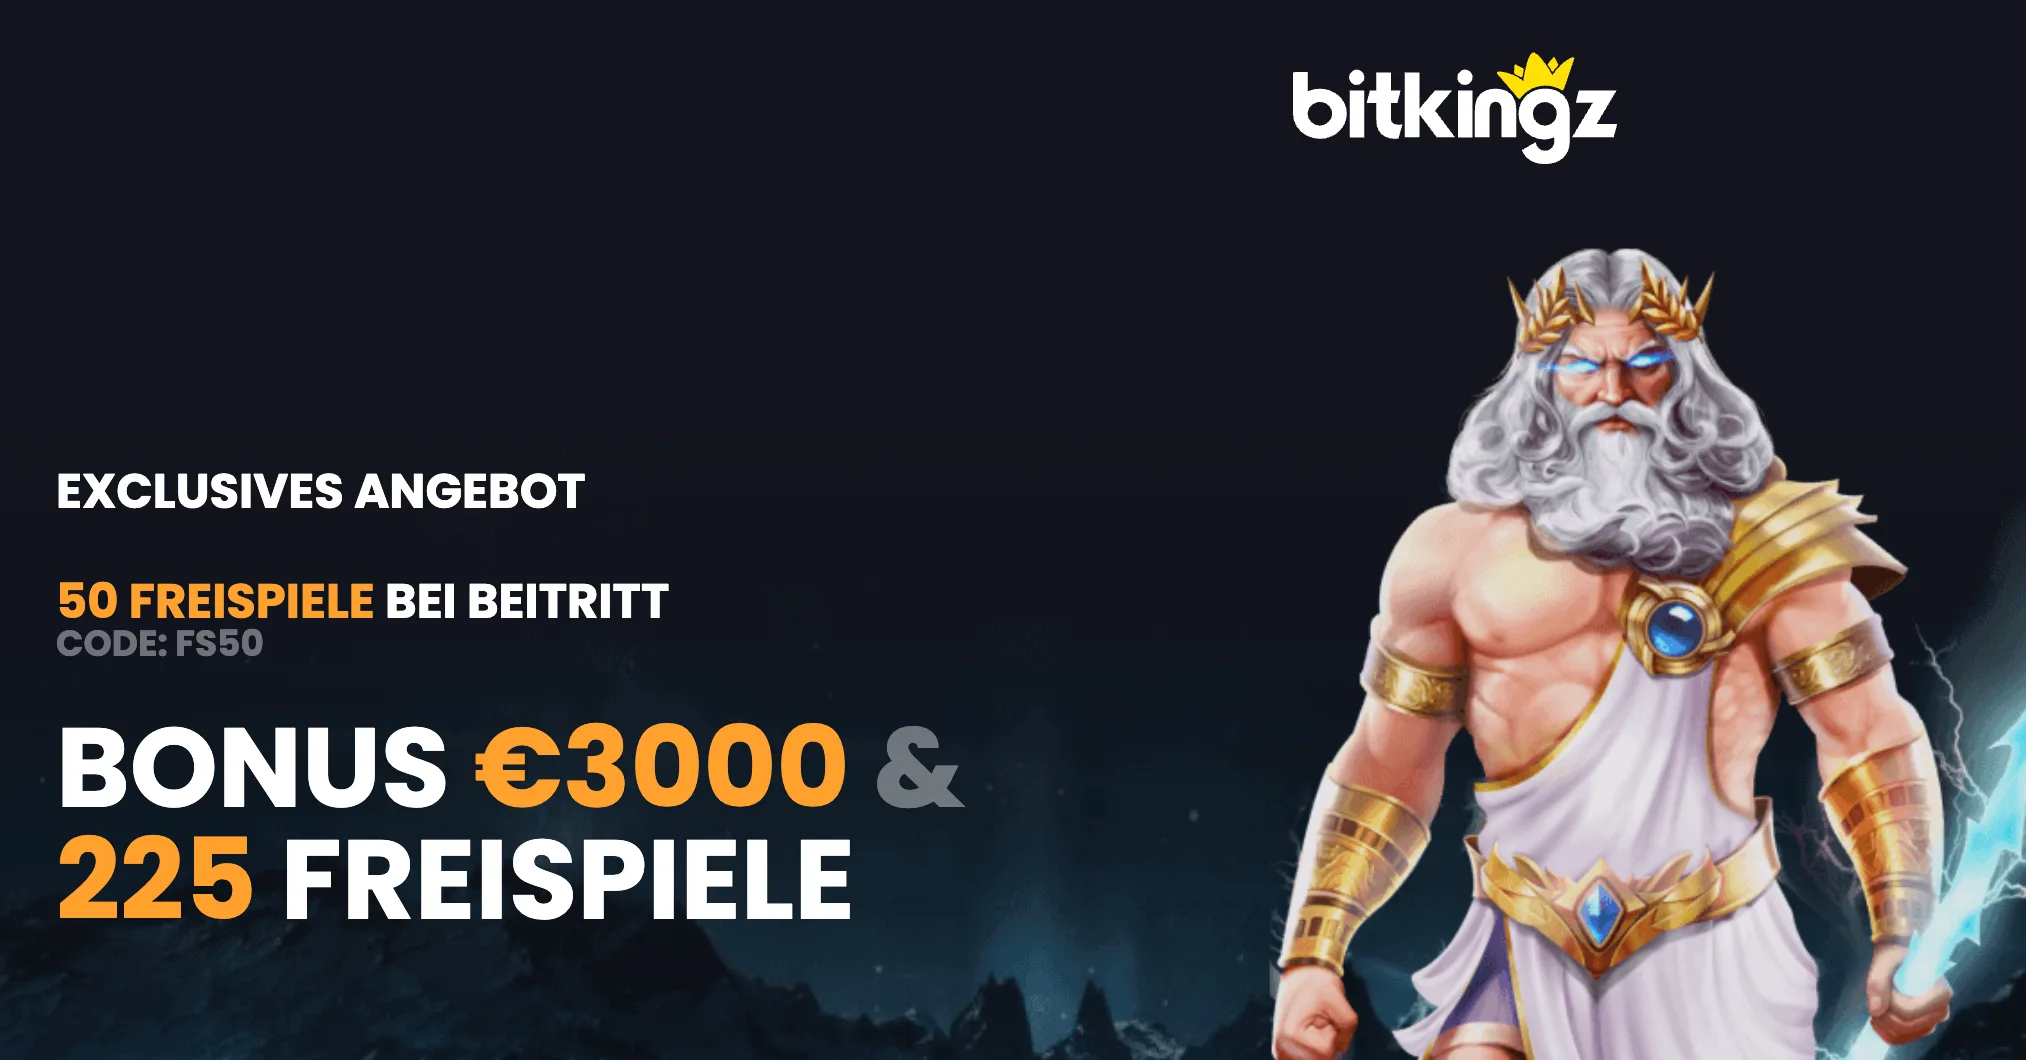 Bitkingz No Deposit Bonus